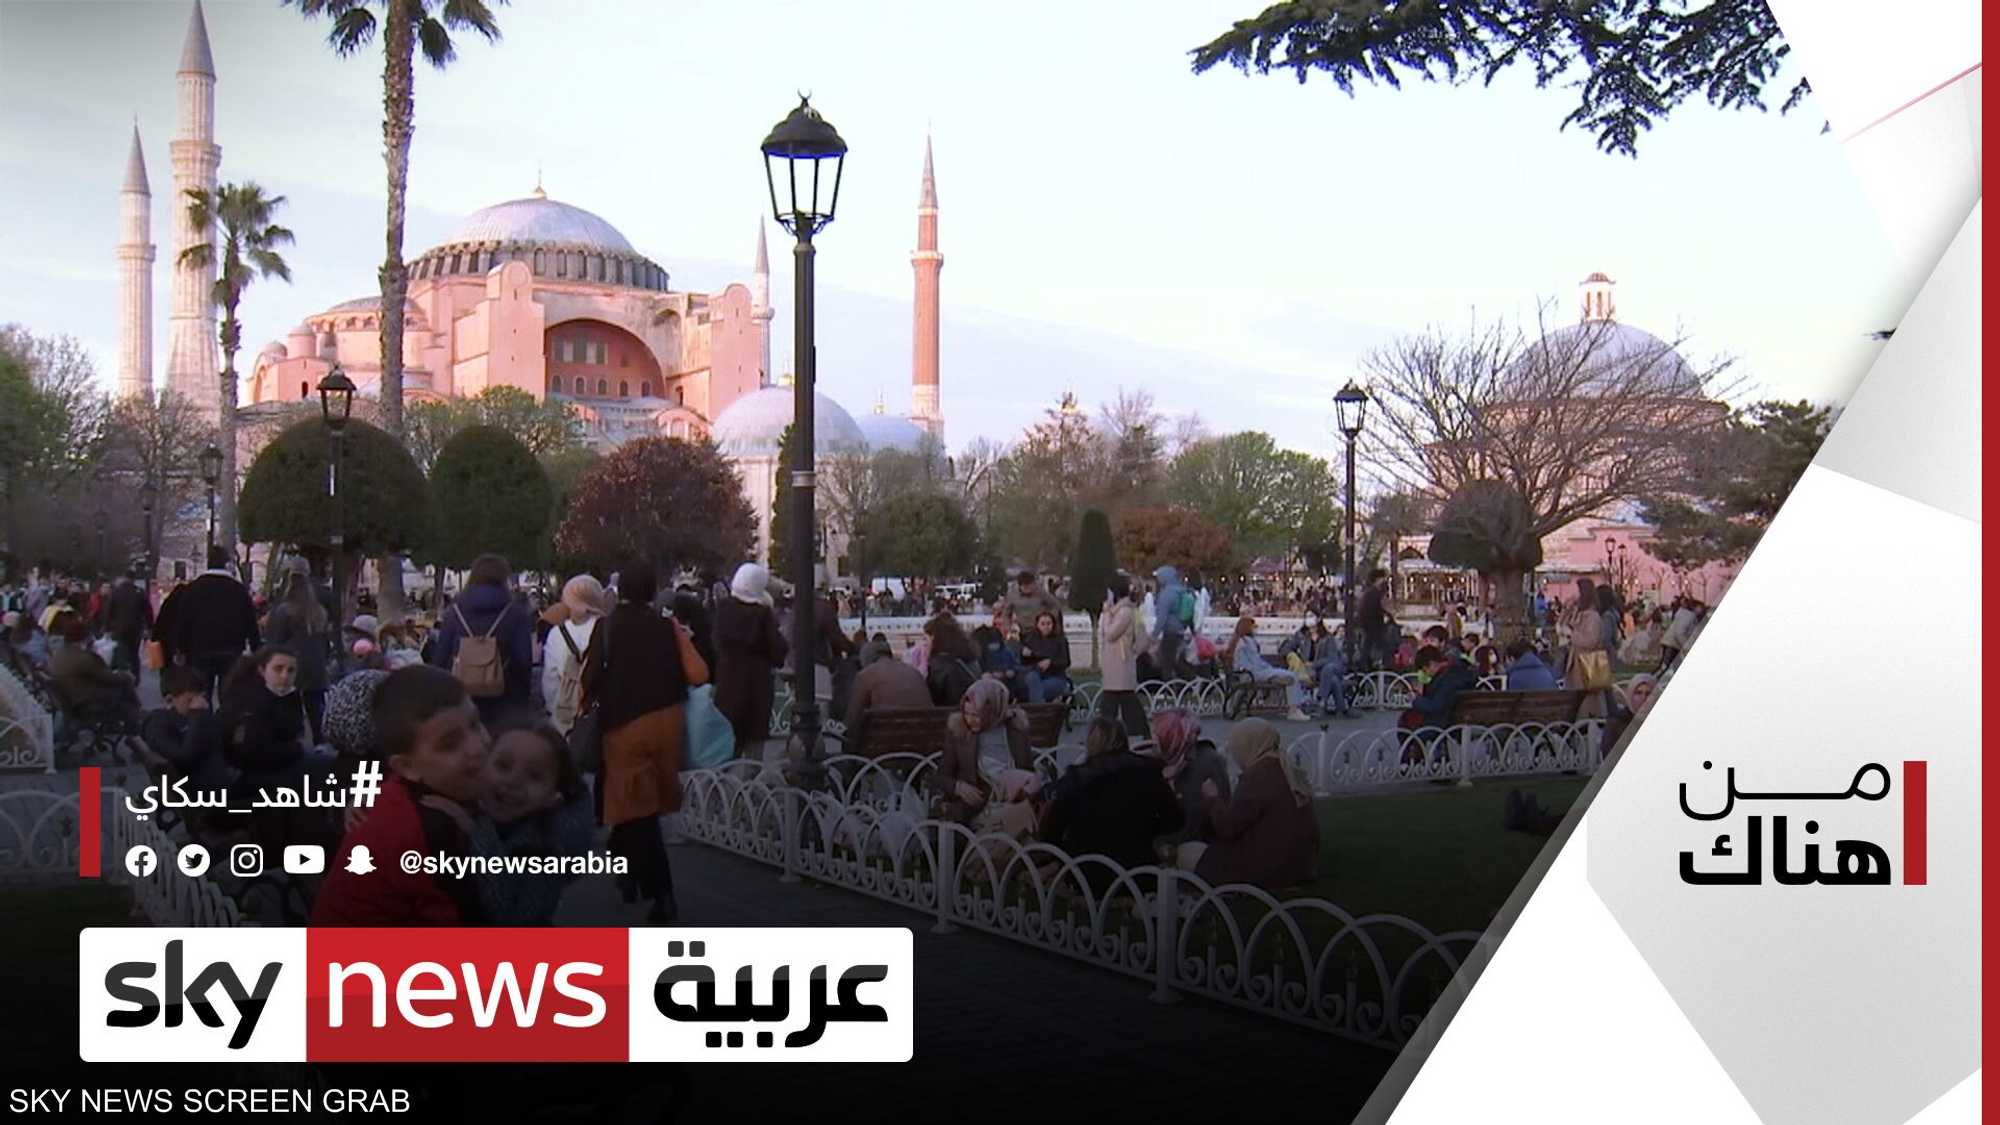 أمسيات رمضان في إسطنبول.. ليال بأجواء ذات طابع خاص